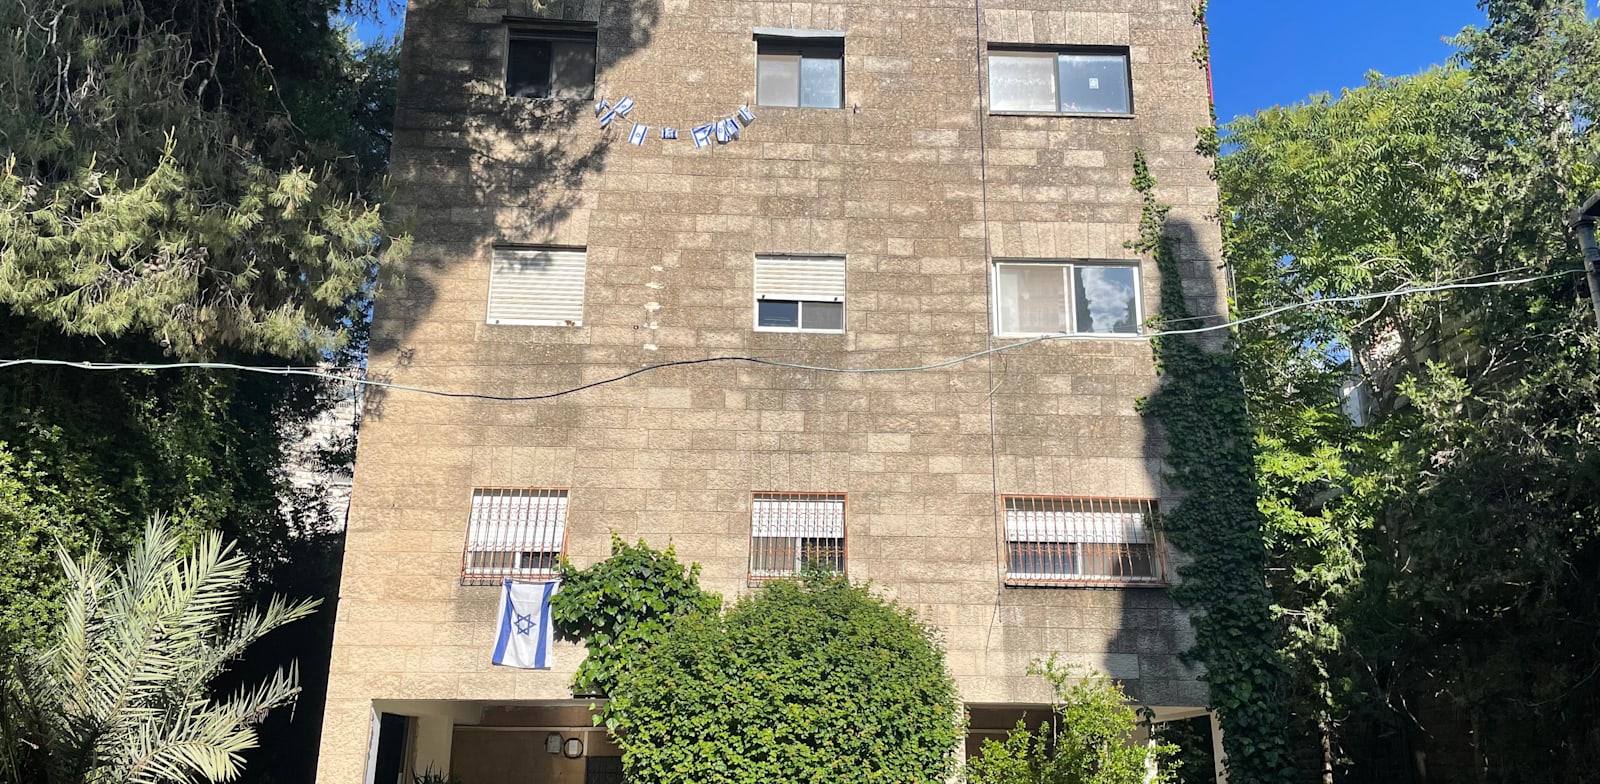 הבניין ברחוב אלפסי 3 בשכונת רחביה בירושלים / צילום: צבי מרמור